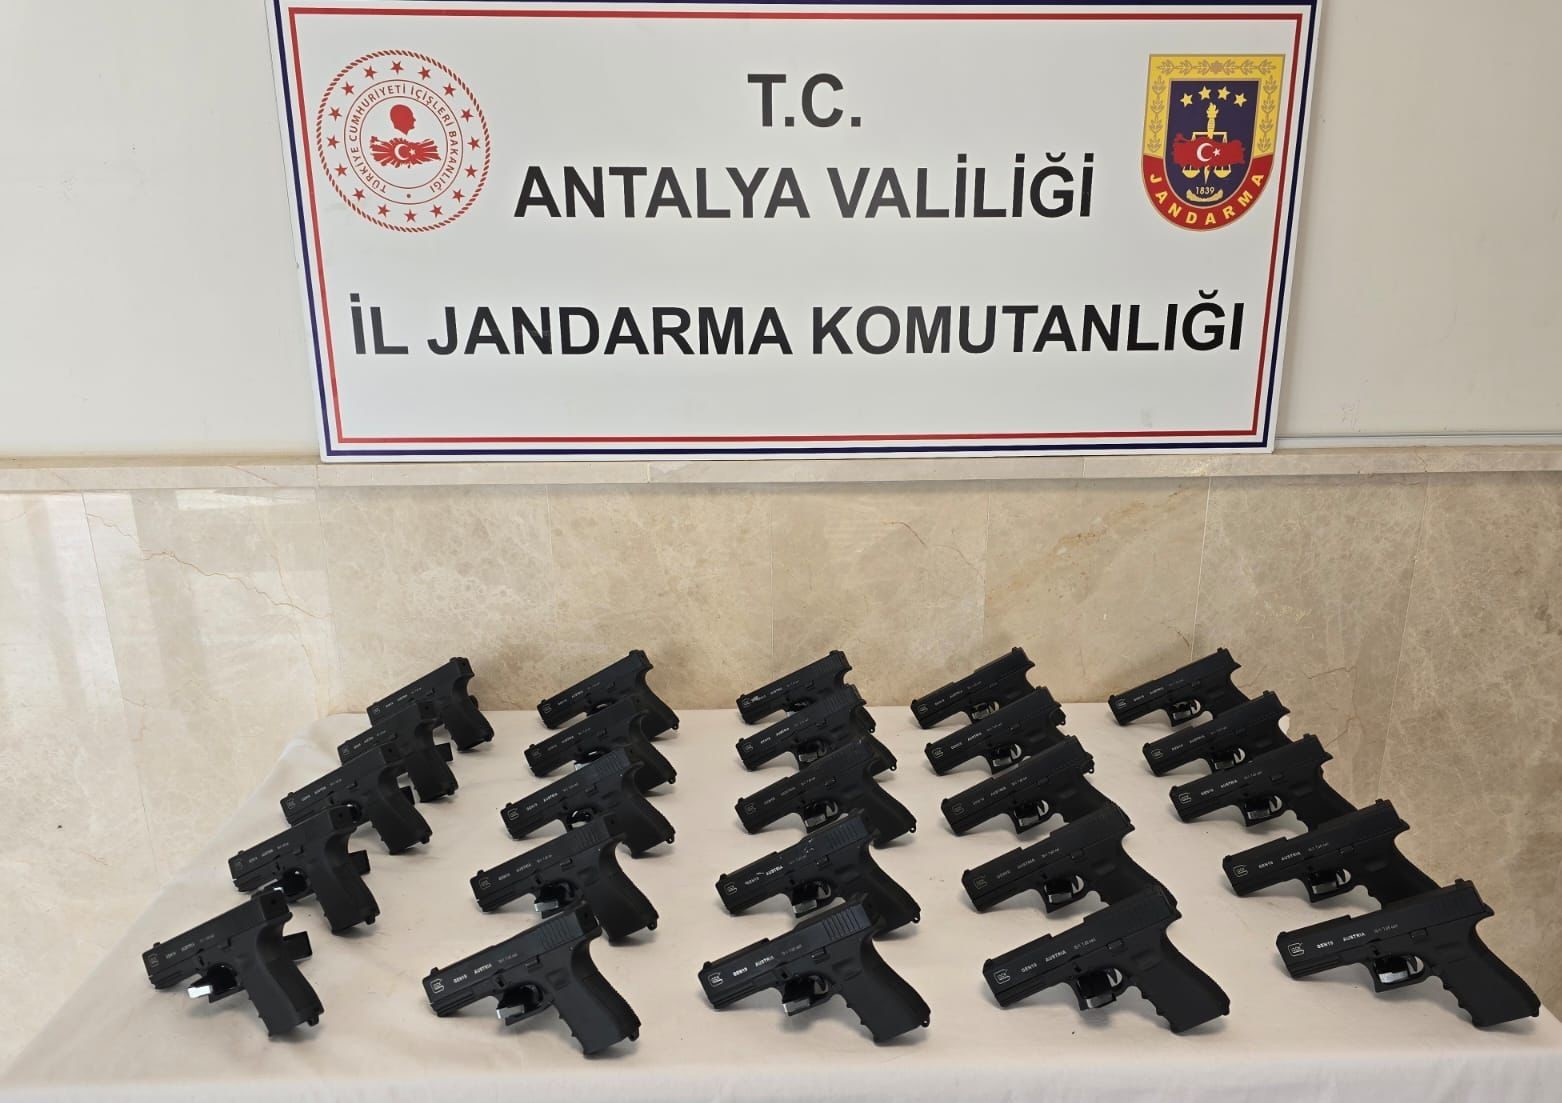 Antalya’da ruhsatsız tabanca operasyonu: 3 gözaltı
